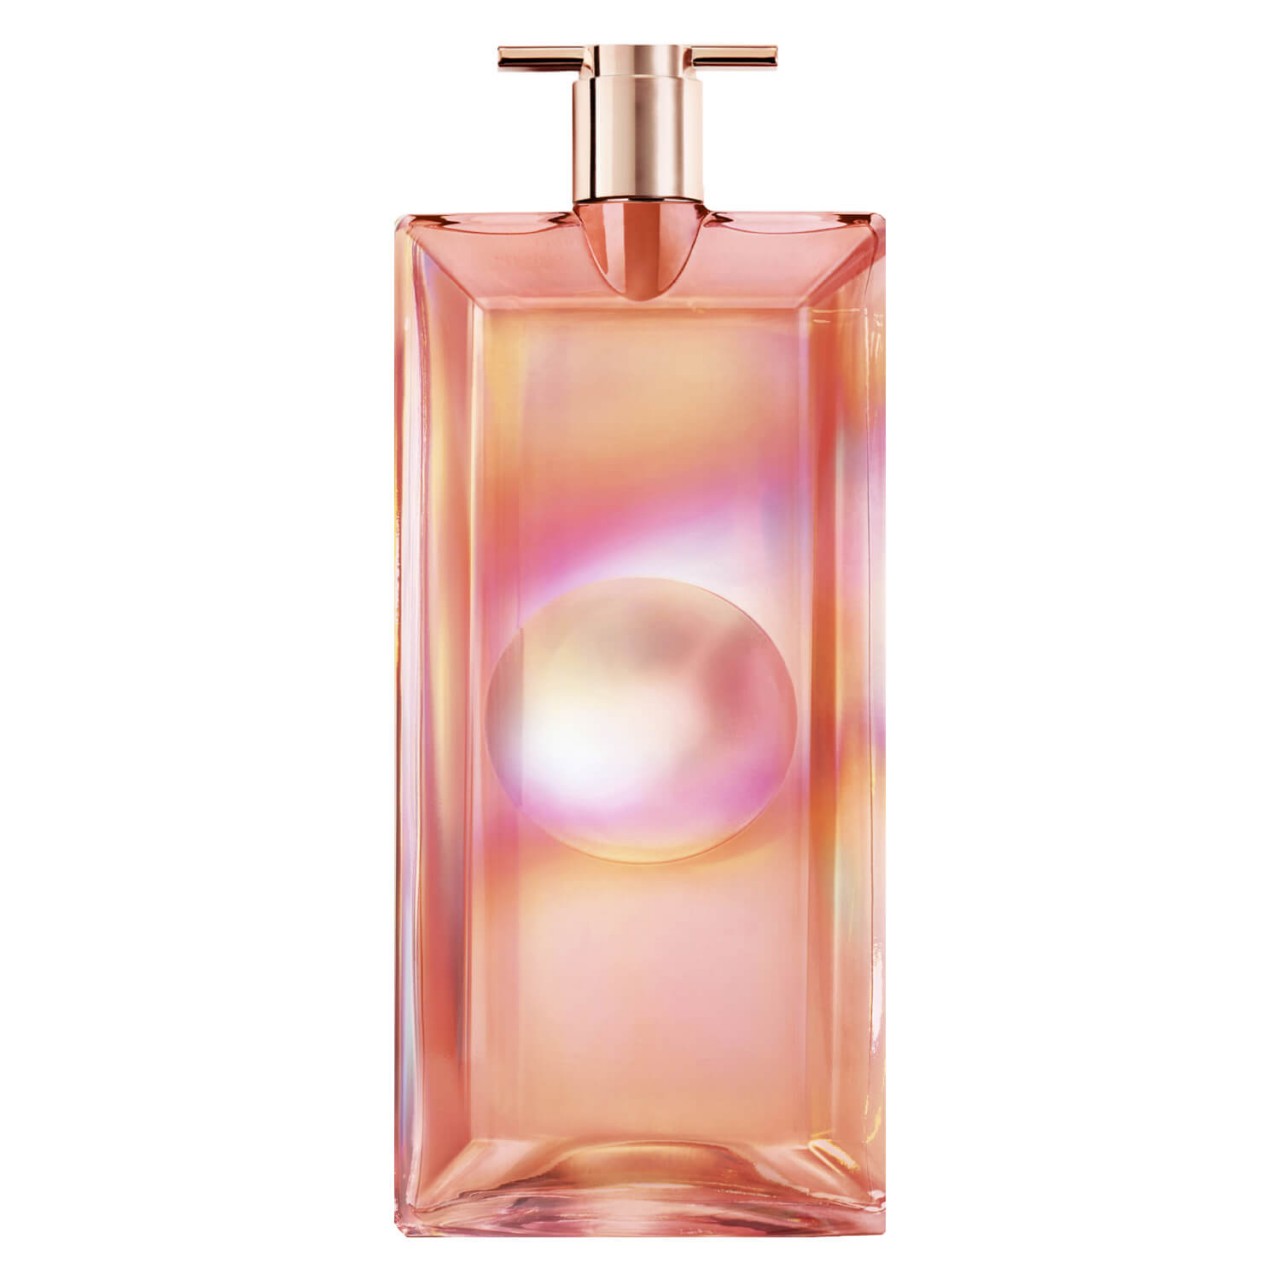 Idôle Nectar Eau de Parfum von Lancôme